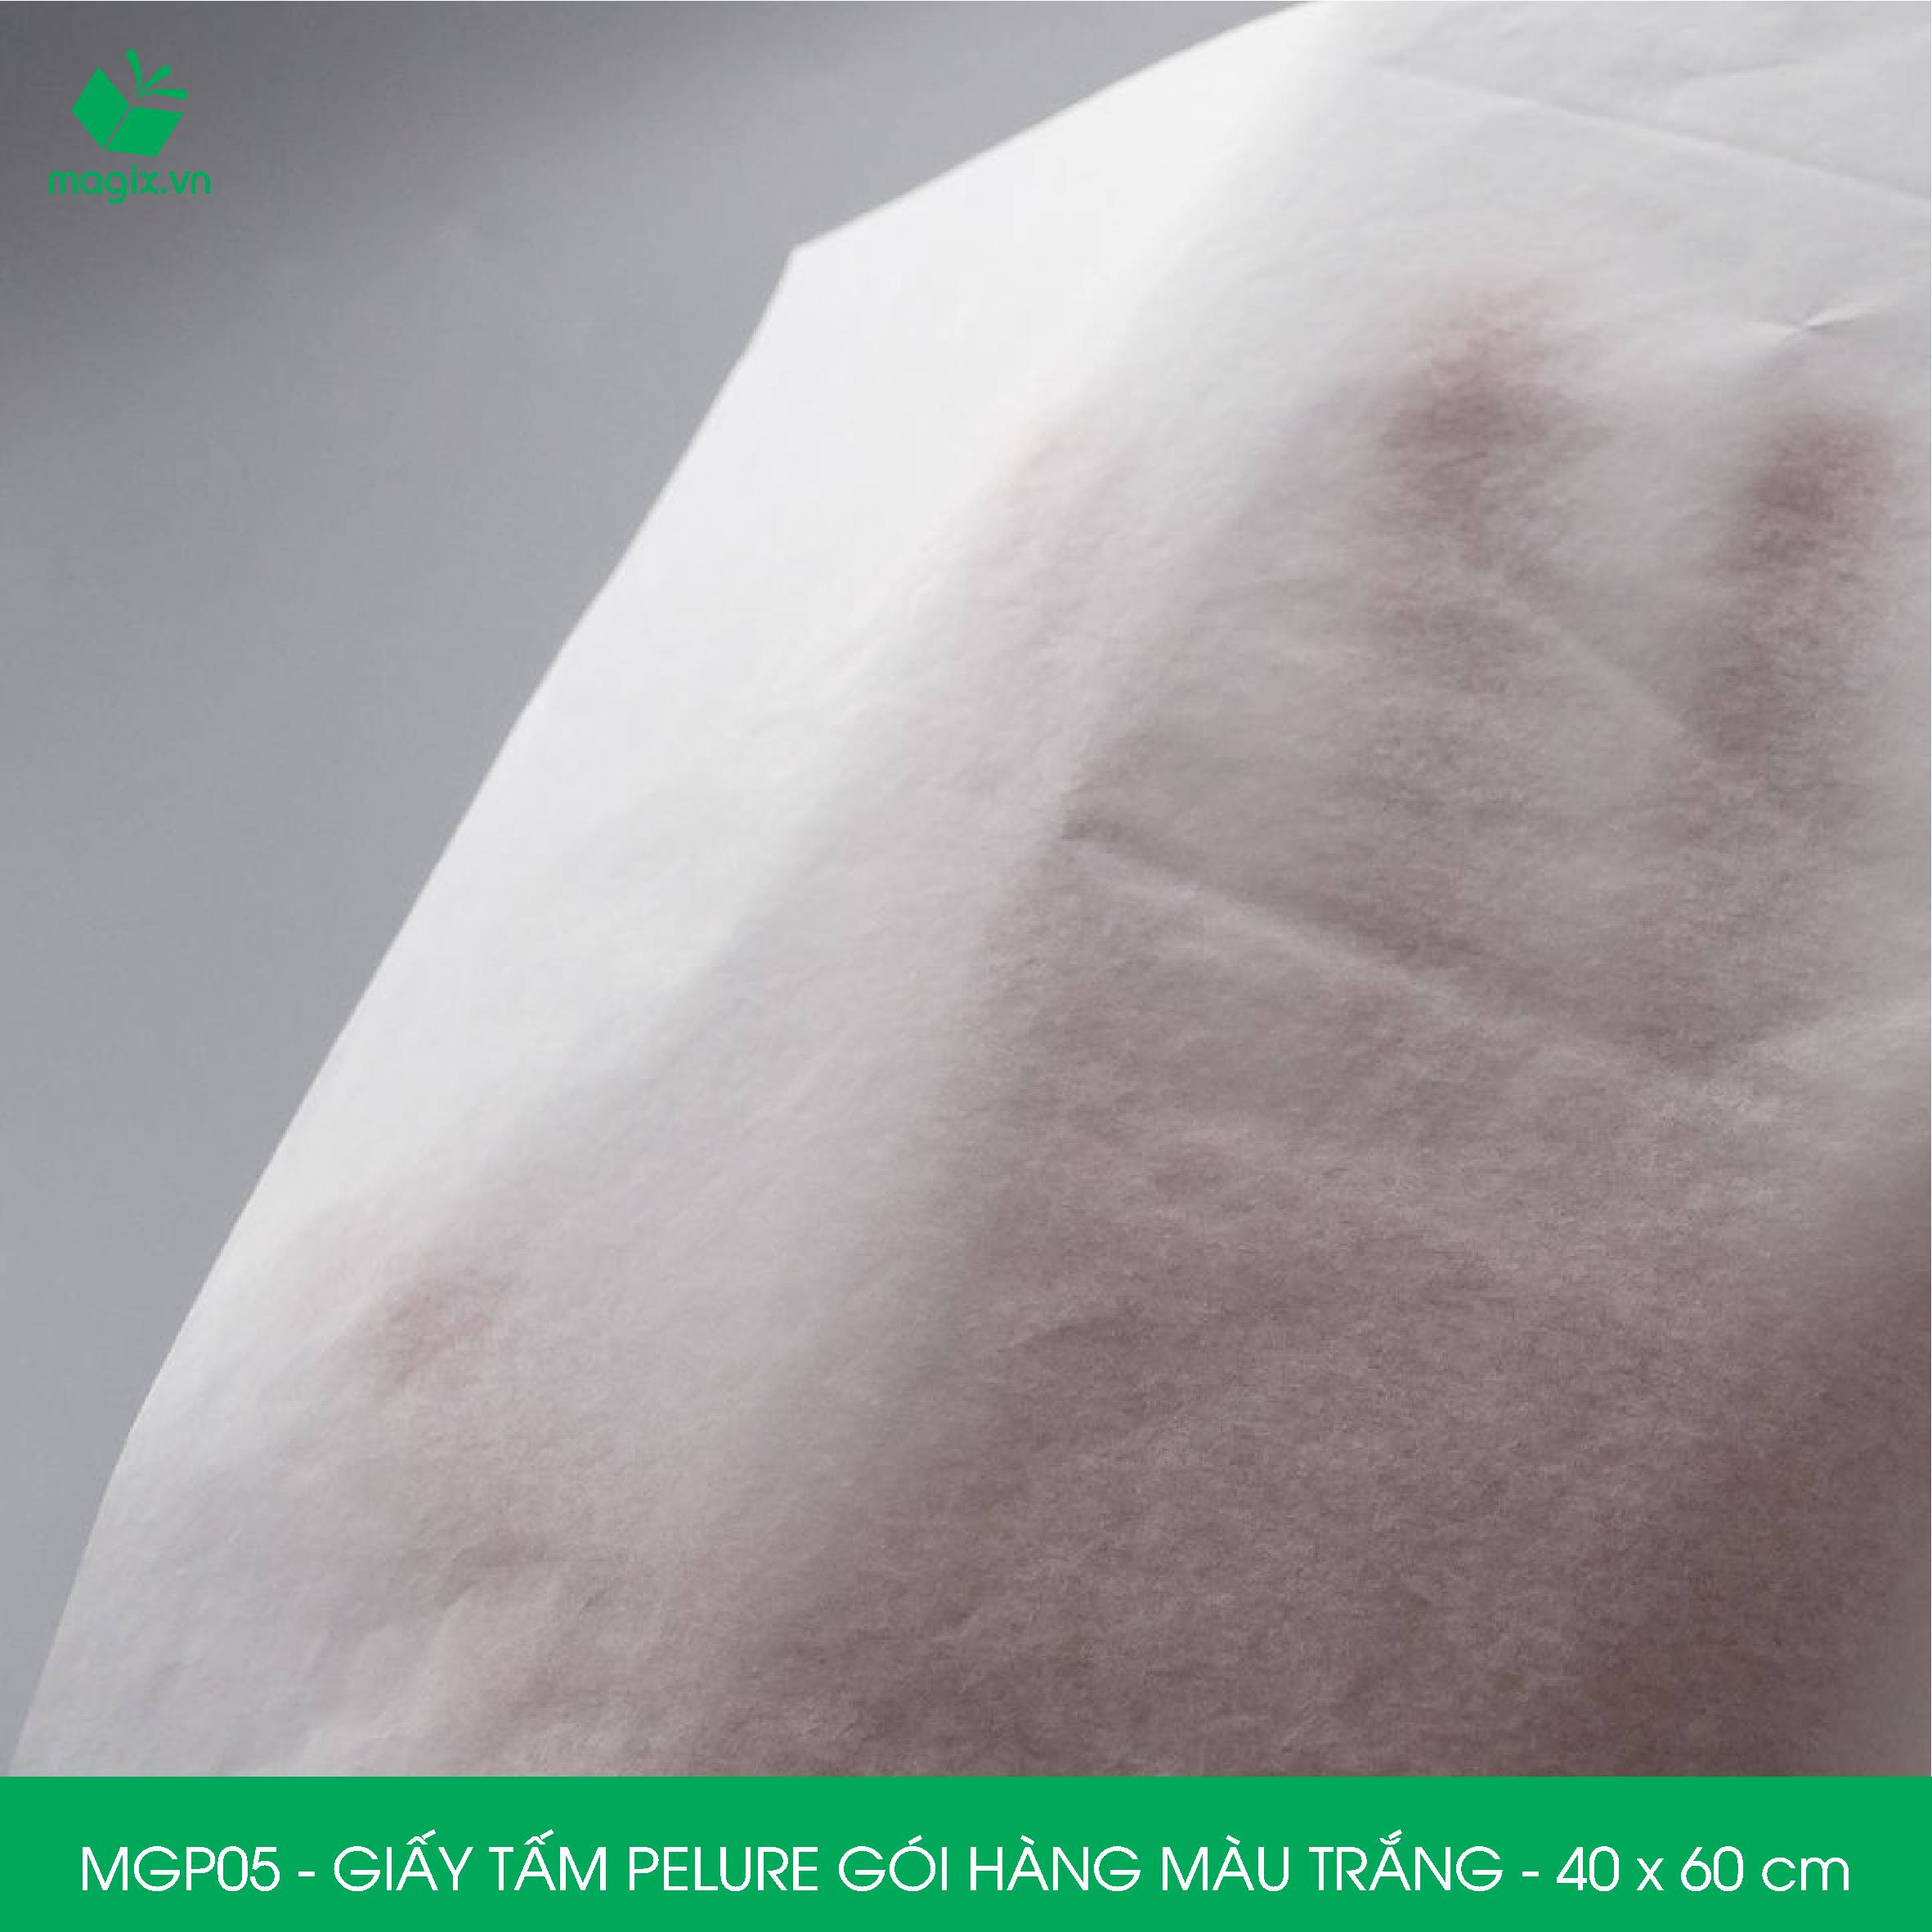 MGP05 - 40x60 cm - 500 tấm giấy Pelure trắng gói hàng, giấy chống ẩm 2 mặt mịn, giấy bọc hàng thời trang